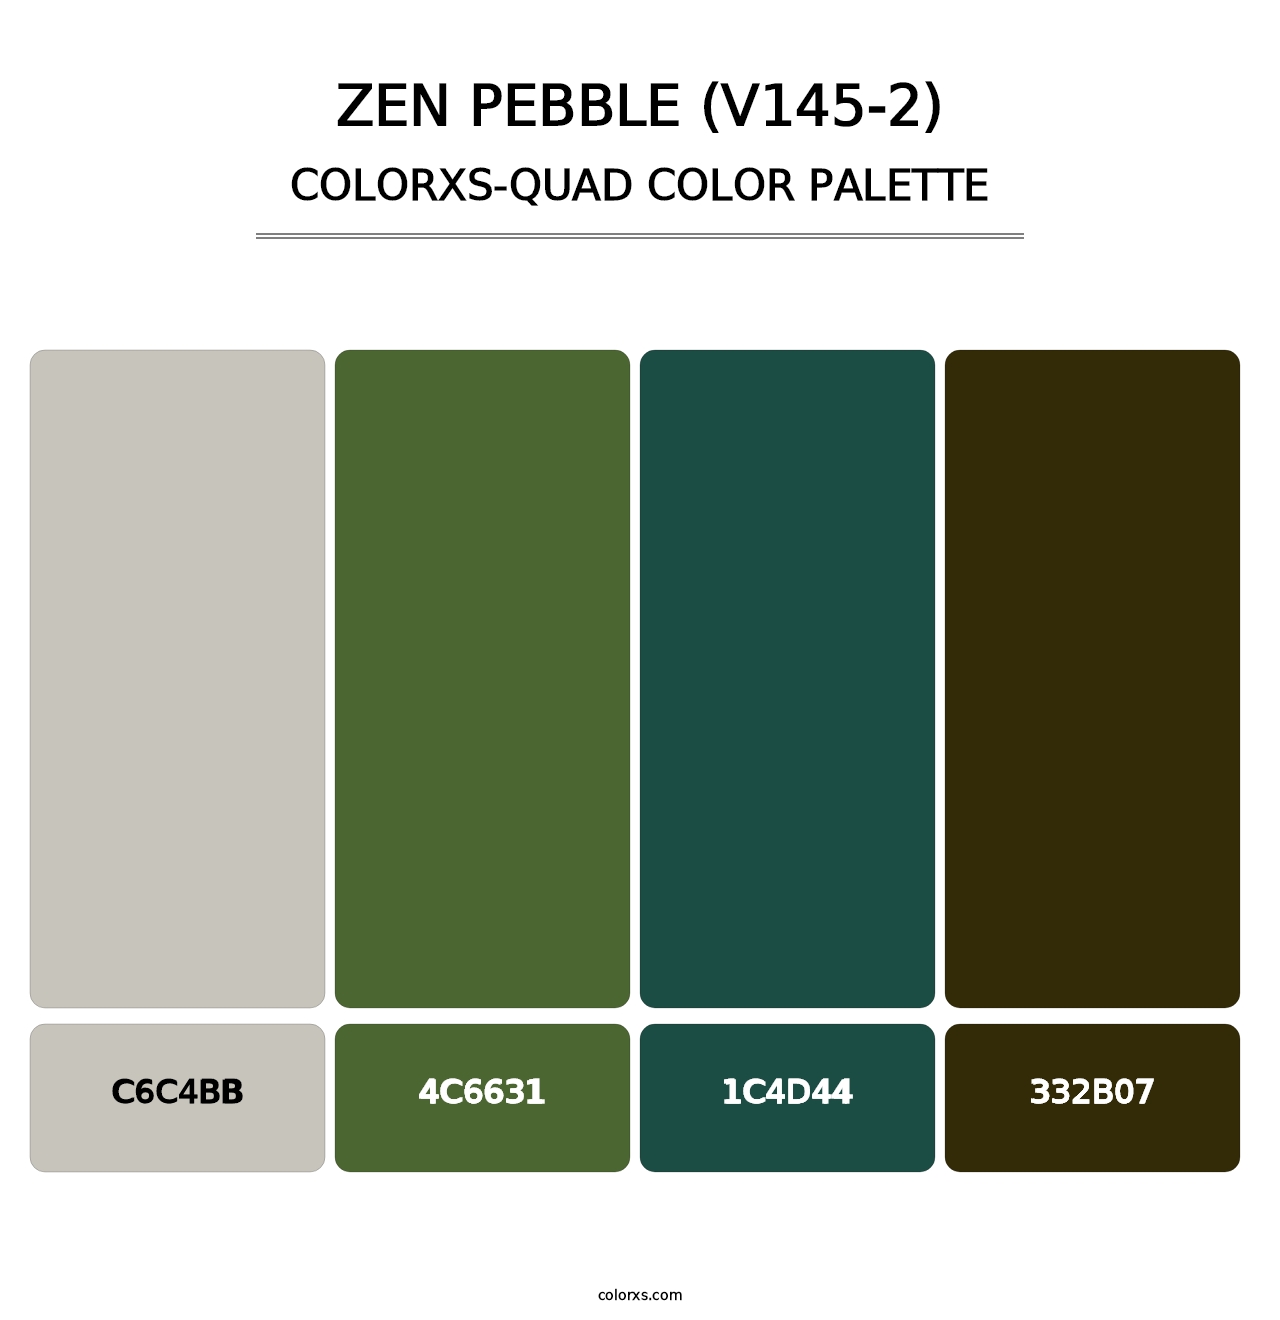 Zen Pebble (V145-2) - Colorxs Quad Palette